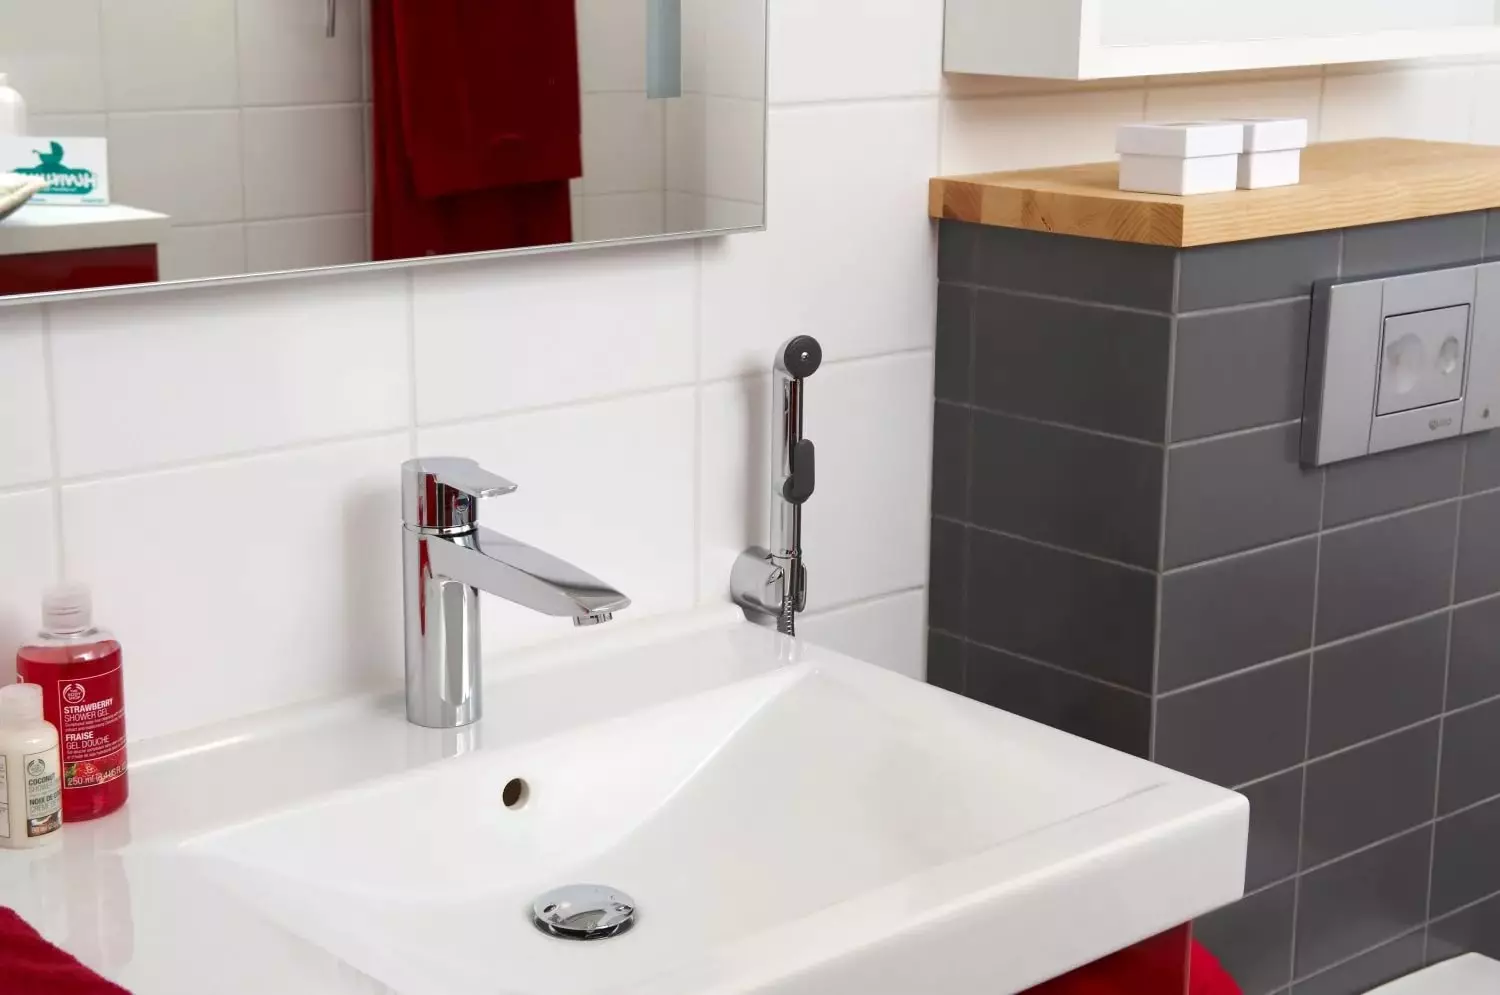 Hygienická sprcha GROHE: Sada s míchačkami a vodními panely, bauflow a baucurve recenze, modely s hadicí a termostatem 10468_24